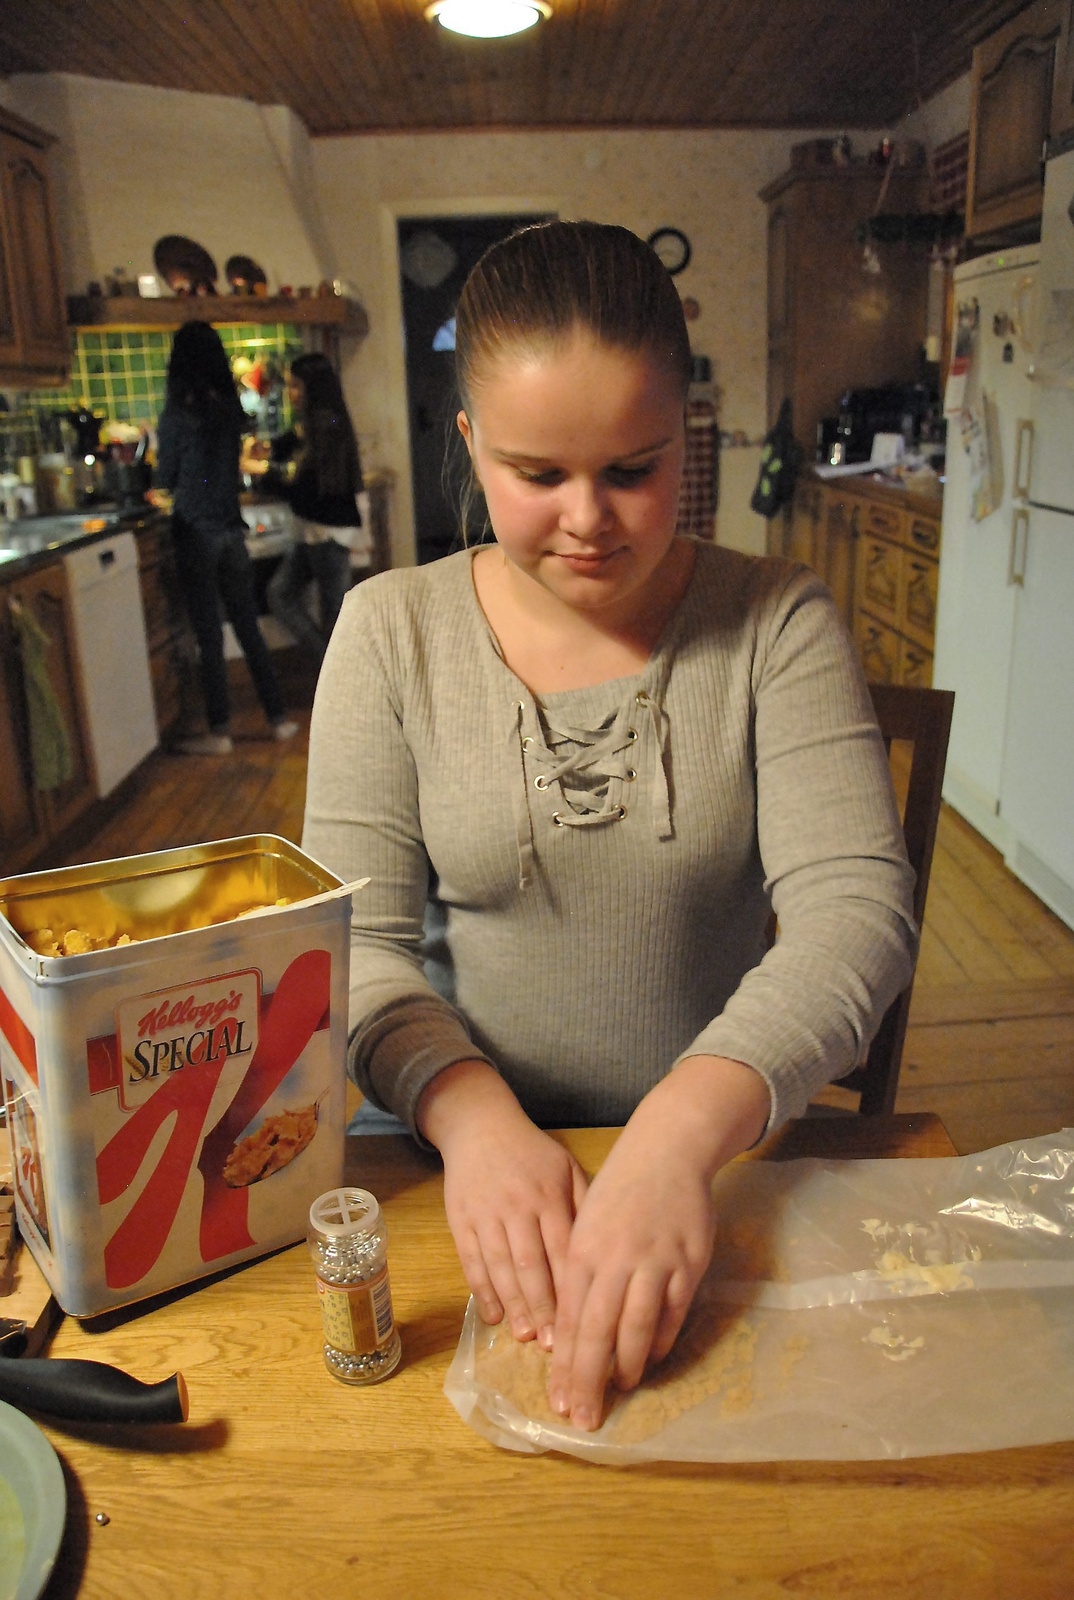 Ida Tennevi tipsar om att man kan spara påsen i cornflakespaketet, så blir det lättare att krossa cornflakes. Dessa påsar är inte lika ömtåliga som vanliga plastpåsar.
Foto: Marie Strömberg Andersson